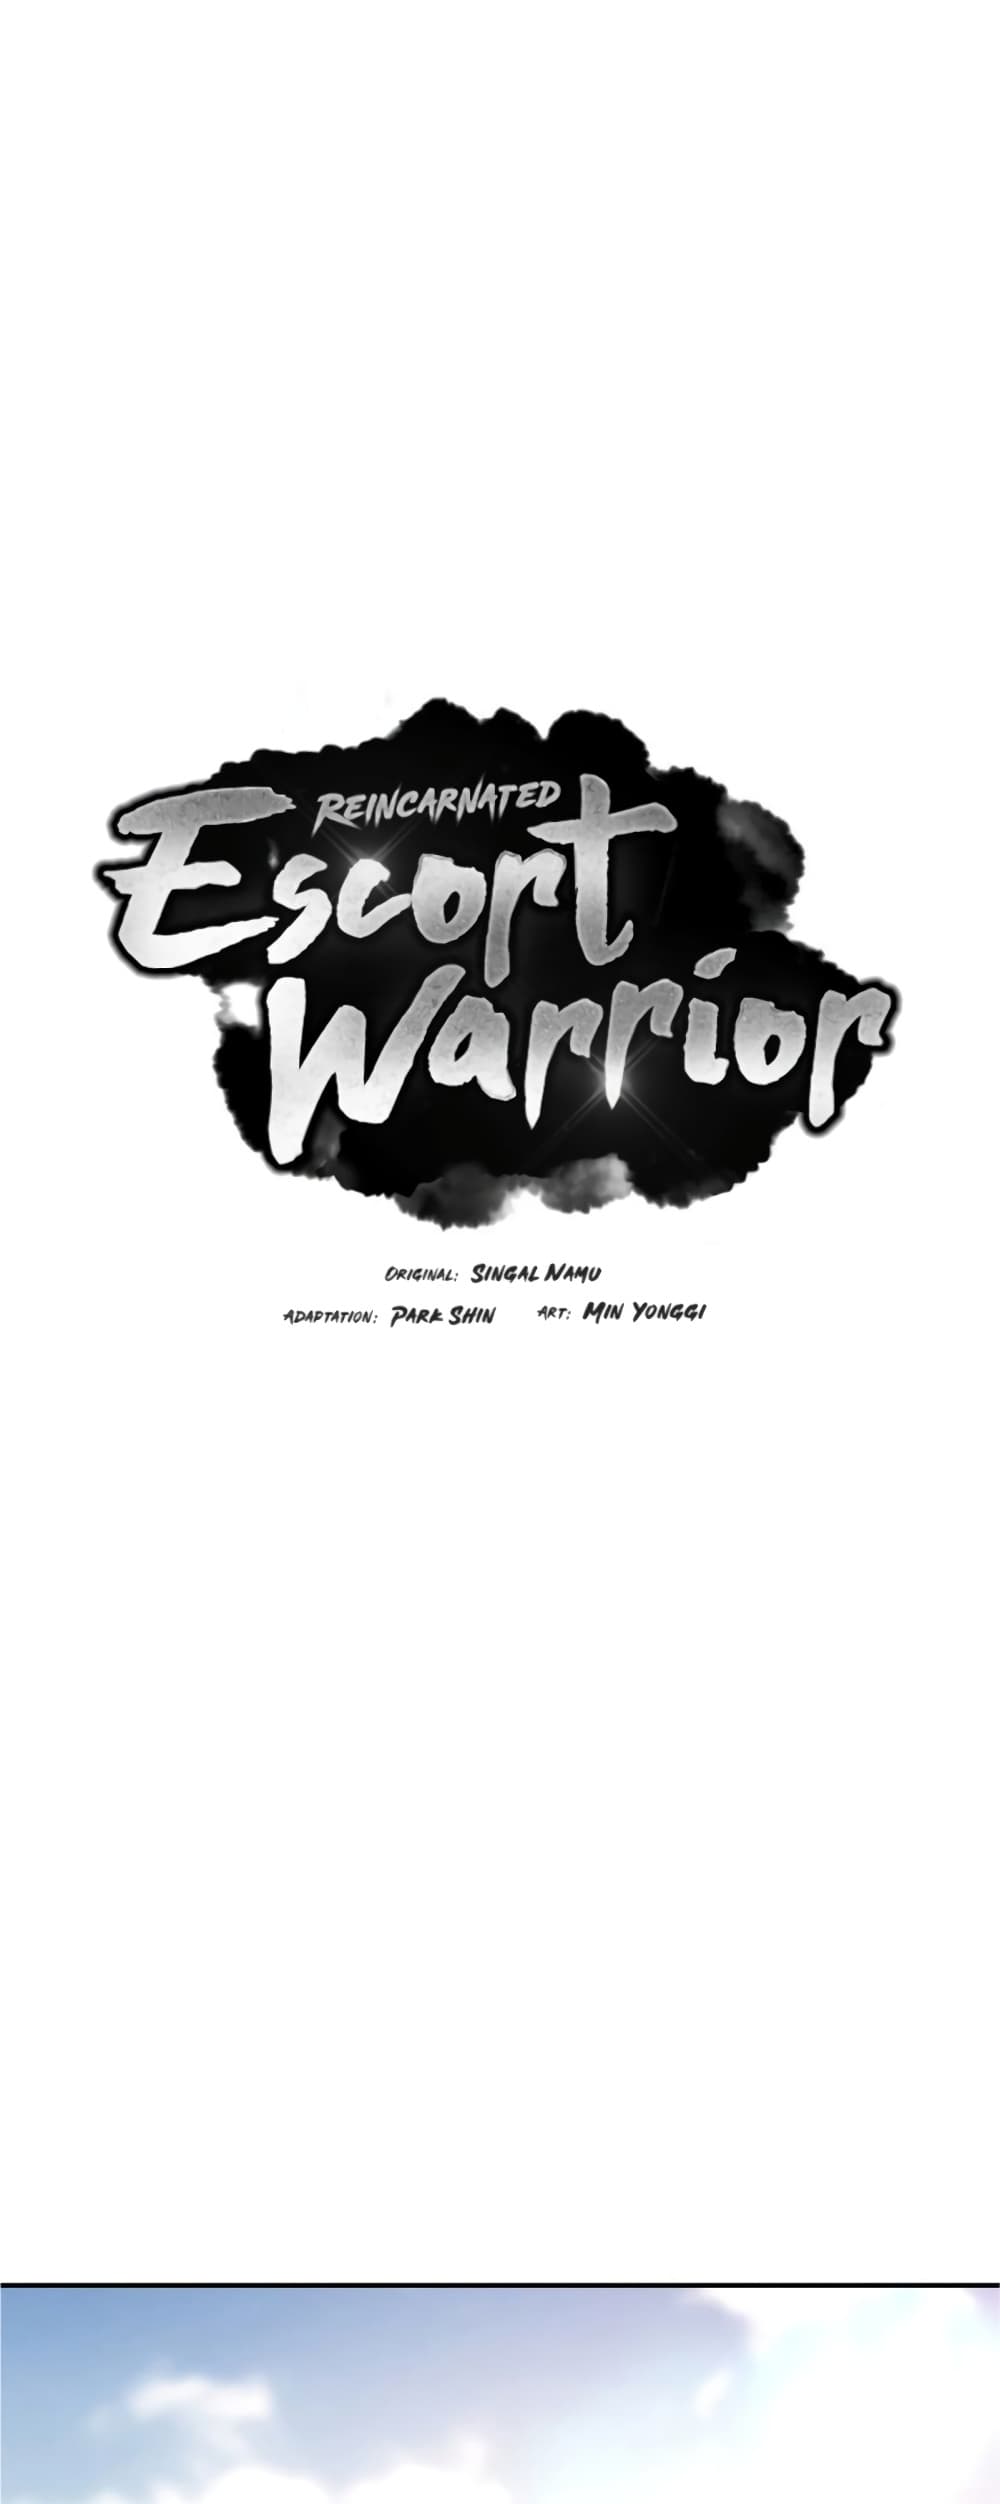 Reincarnated Escort Warrior 31 02